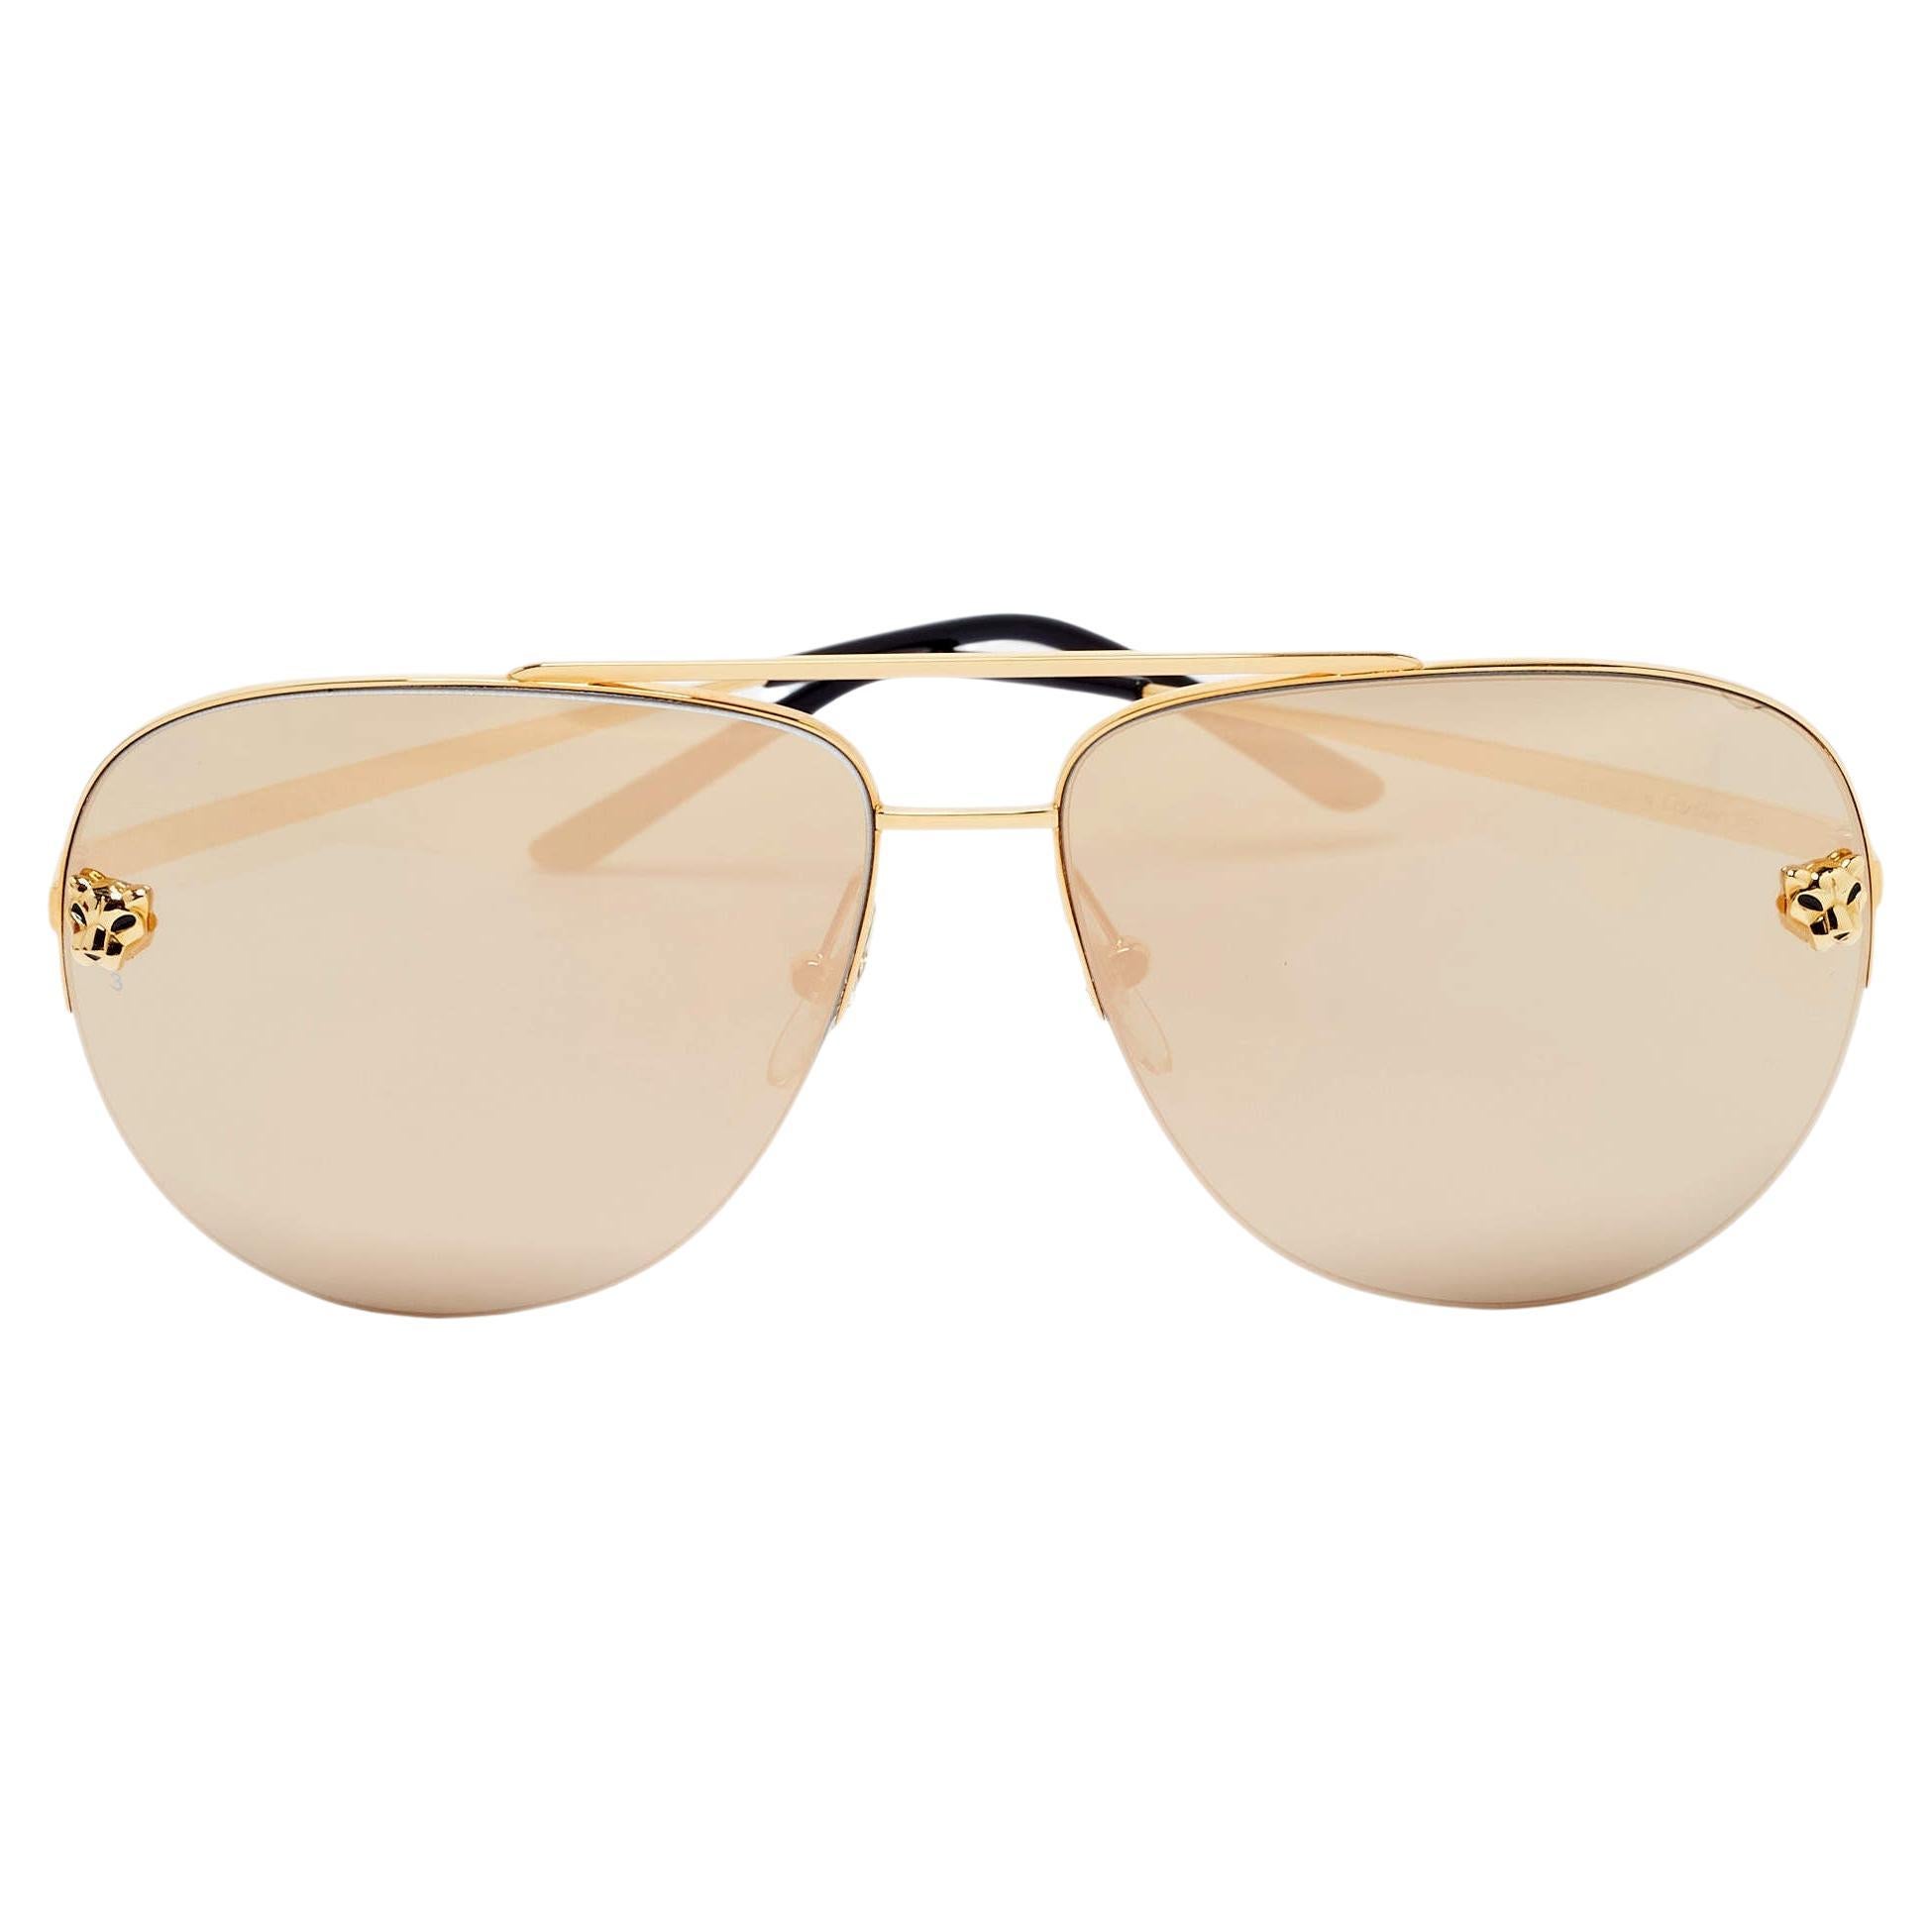 Cartier Gold Panthere De Cartier Mirrored Aviator Sunglasses